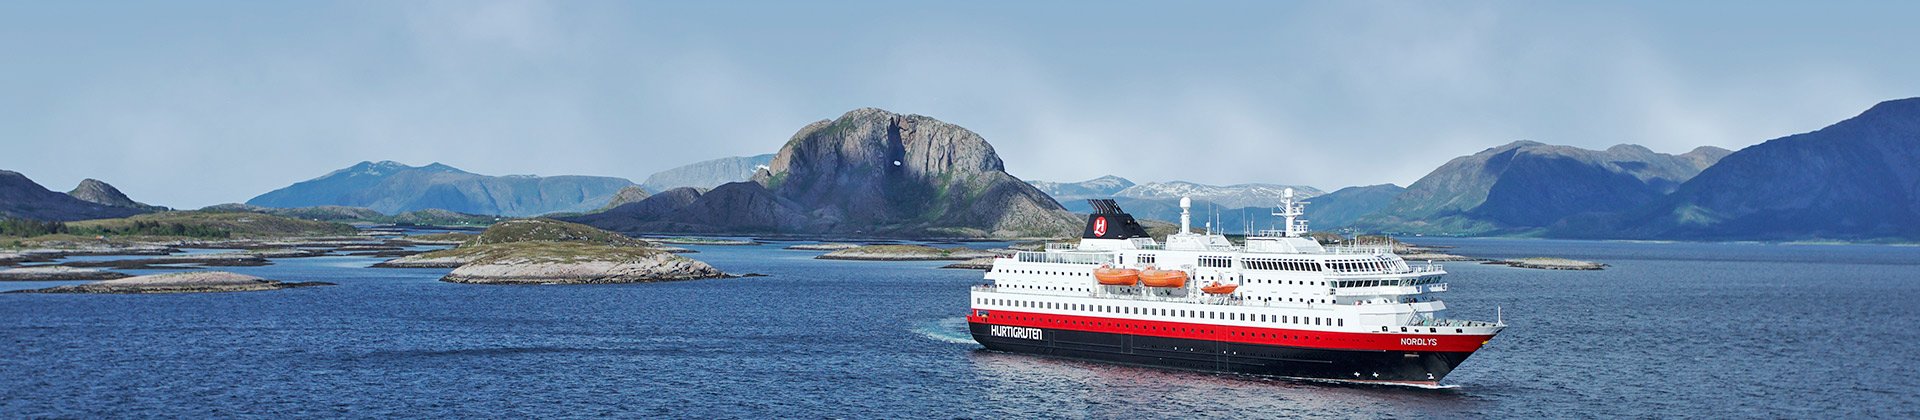 Norwegian Coast, Hurtigruten